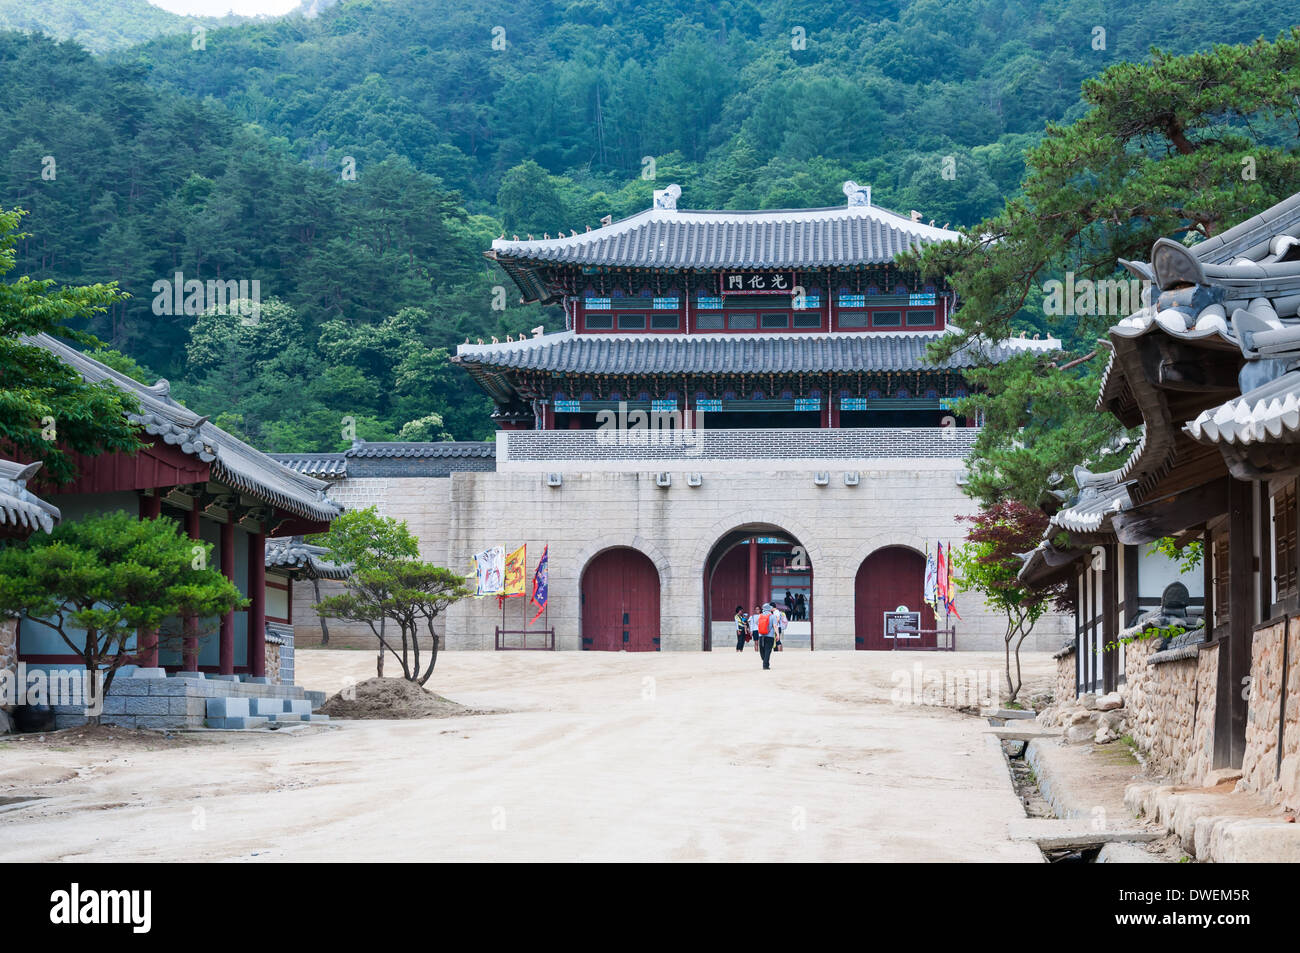 Traditionelle koreanische Architektur an einem historischen Dorf in Südkorea. Stockfoto